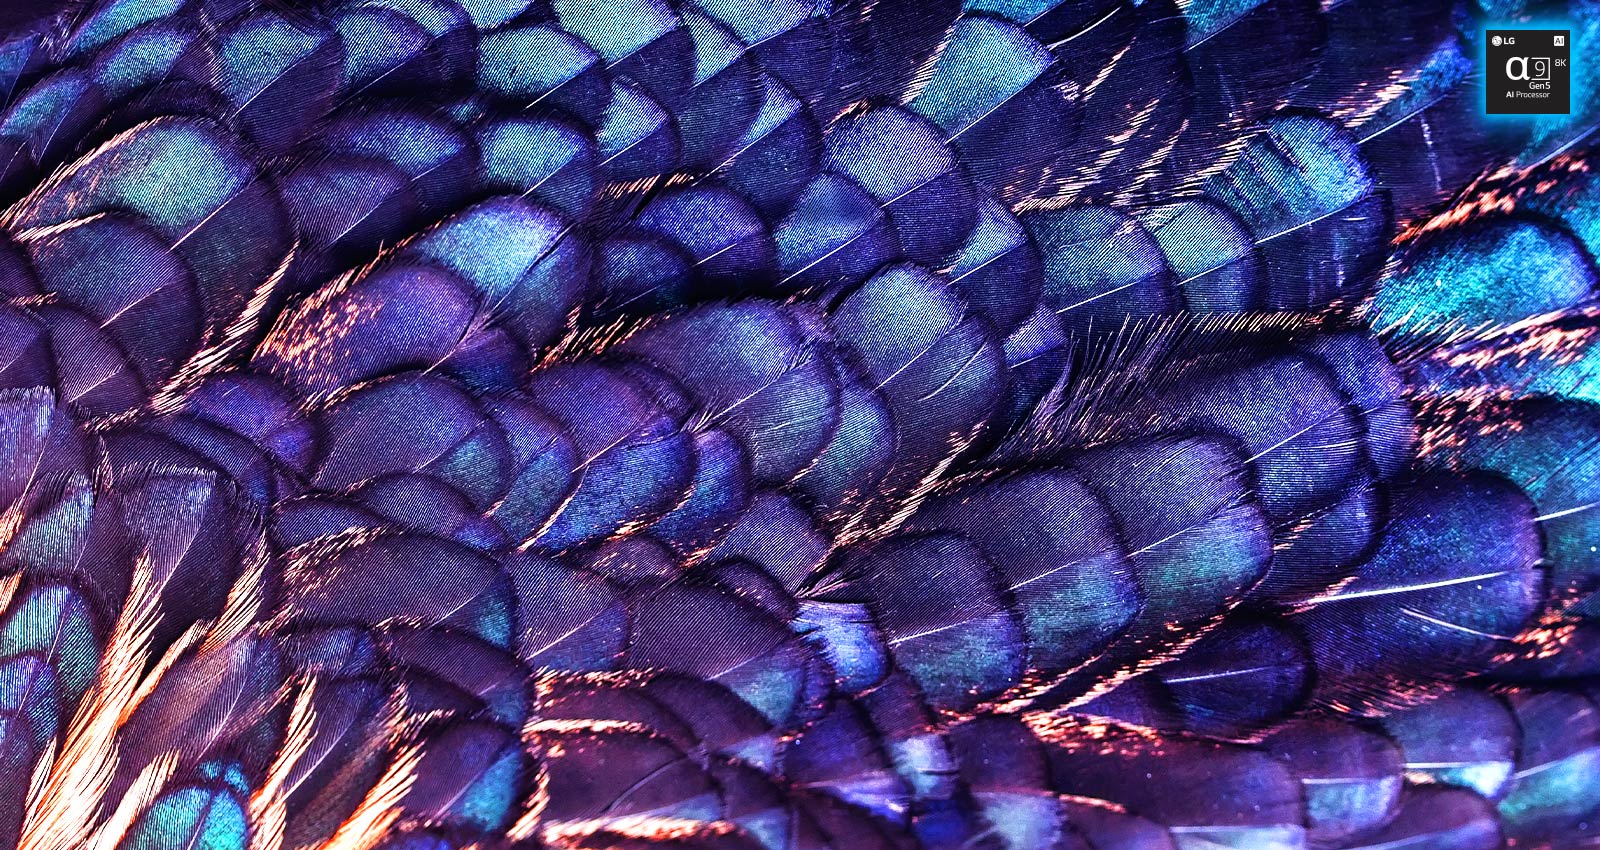 Obraz faktury jaskrawych opalizujących piór ptaka w fioletowym kolorze. Obraz jest podzielony na dwie części – górna jest żywsza i ma napis AI 8K upscaling i zdjęcie procesora, a dolna jest bledsza.